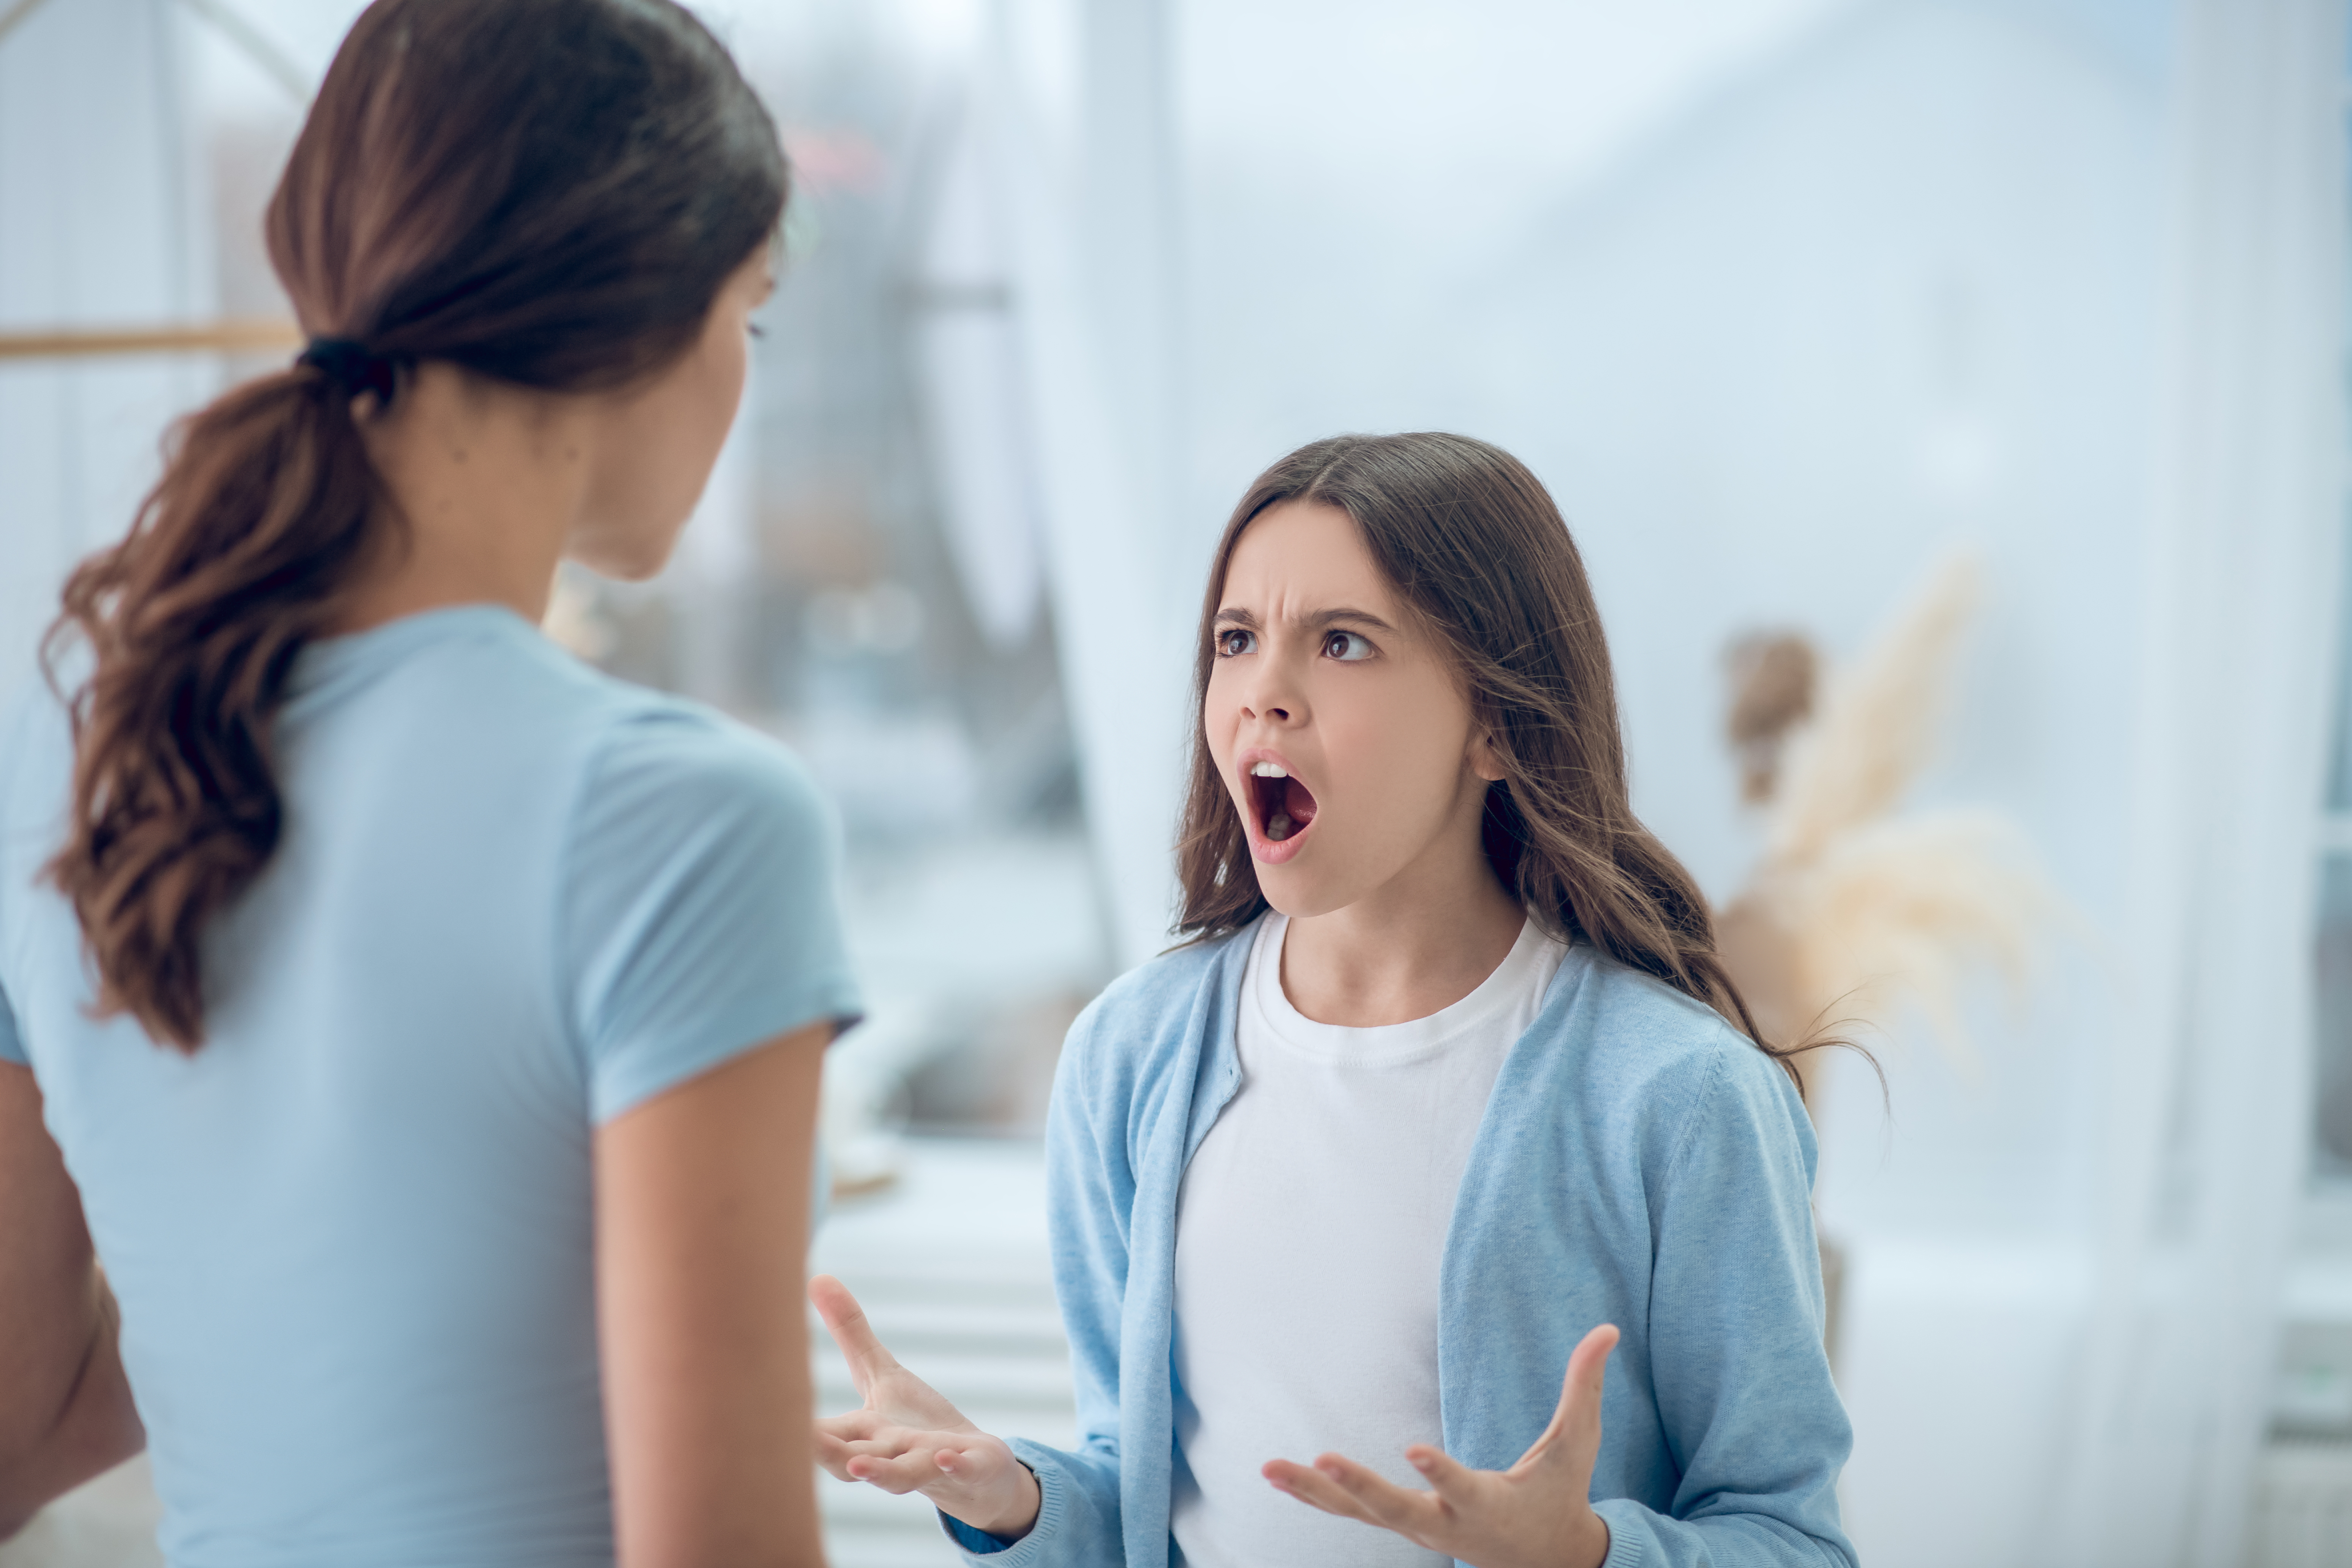 Une jeune fille en colère qui crie après sa mère | Source : Shutterstock